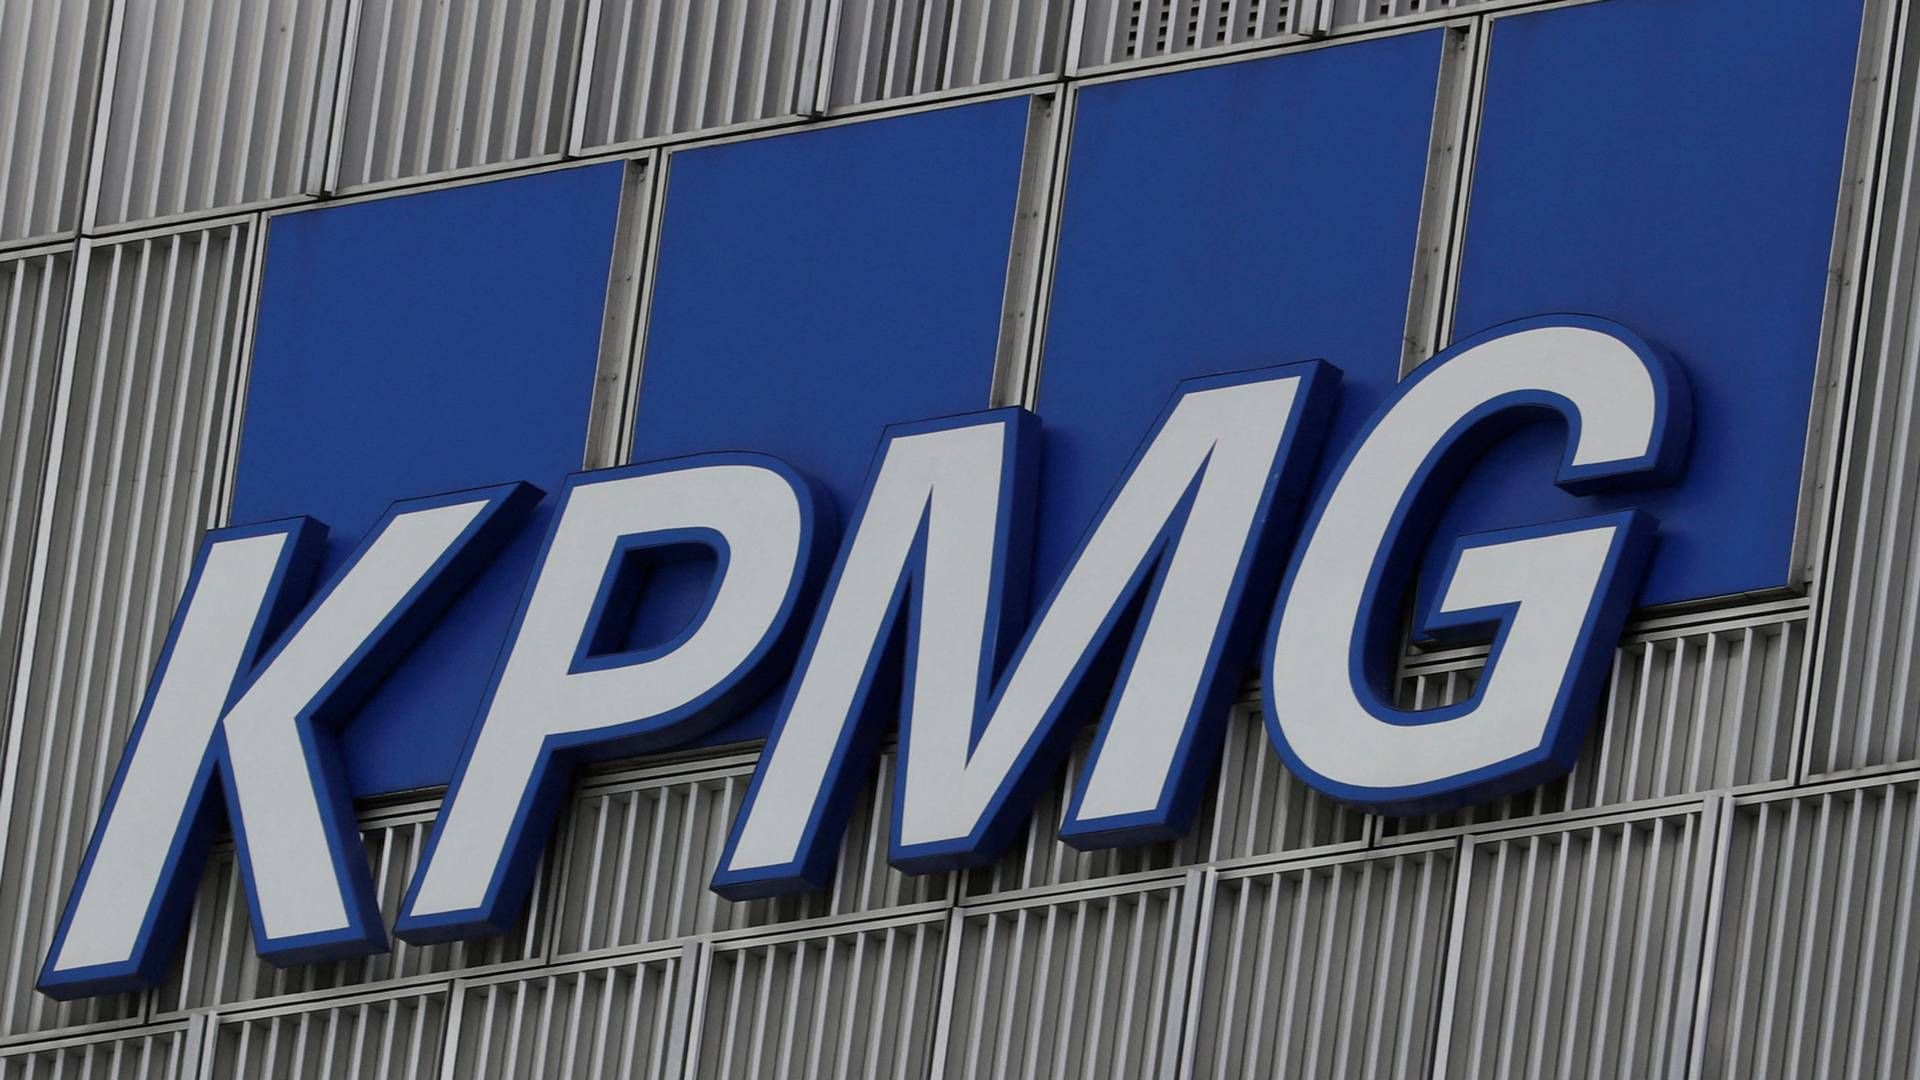 KPMG's nye globale regnskab viser en omsætning på 36,4 mia. dollar – svarende til godt 250 mia. kr. | Foto: Reinhard Krause